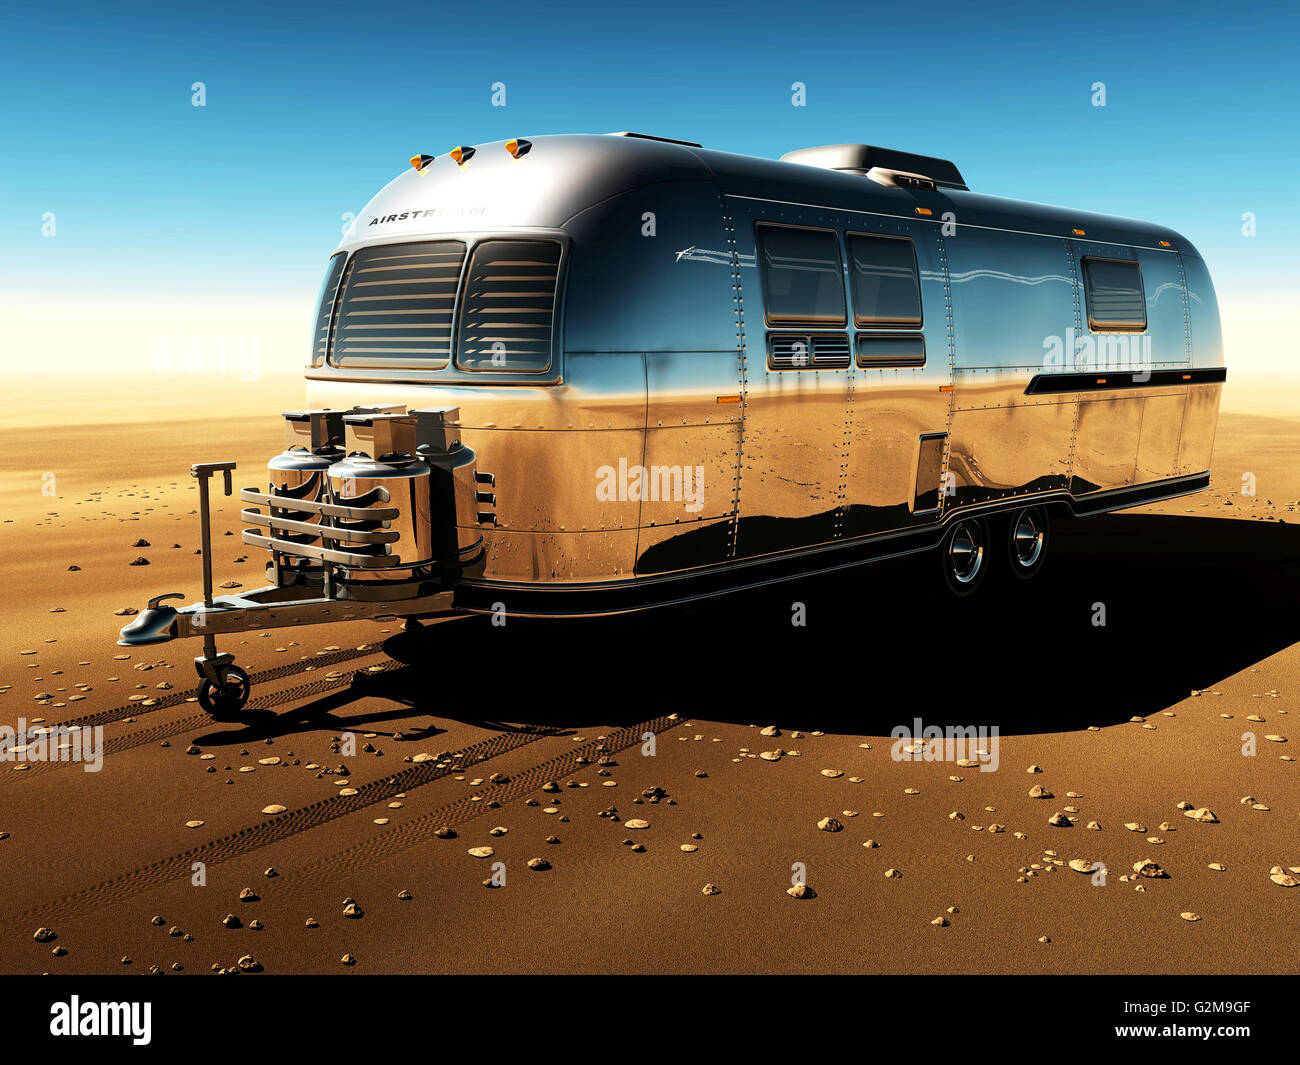 Metal trailer sur désert, ciel clair, l'image générée numériquement Banque D'Images